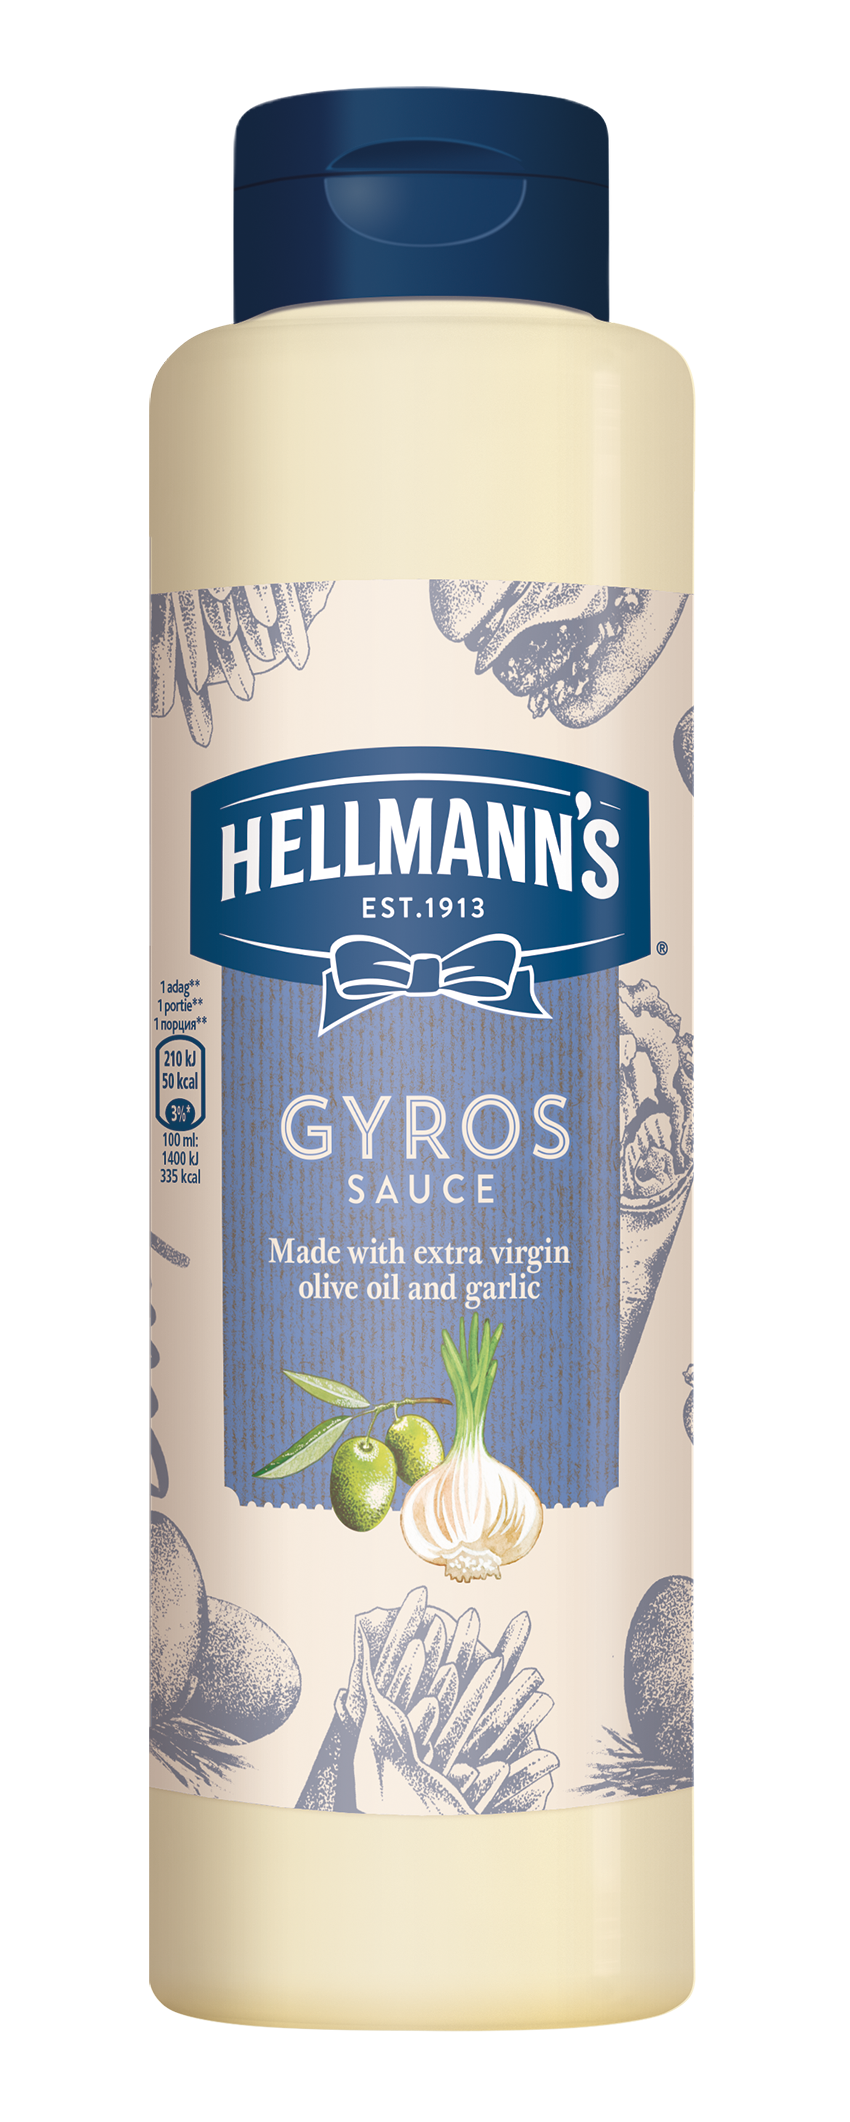 HELLMANN'S Gyros szósz 850 ml -  Minőségi márkájú termék felszolgálása pozitív benyomást kelt a vendégekben.